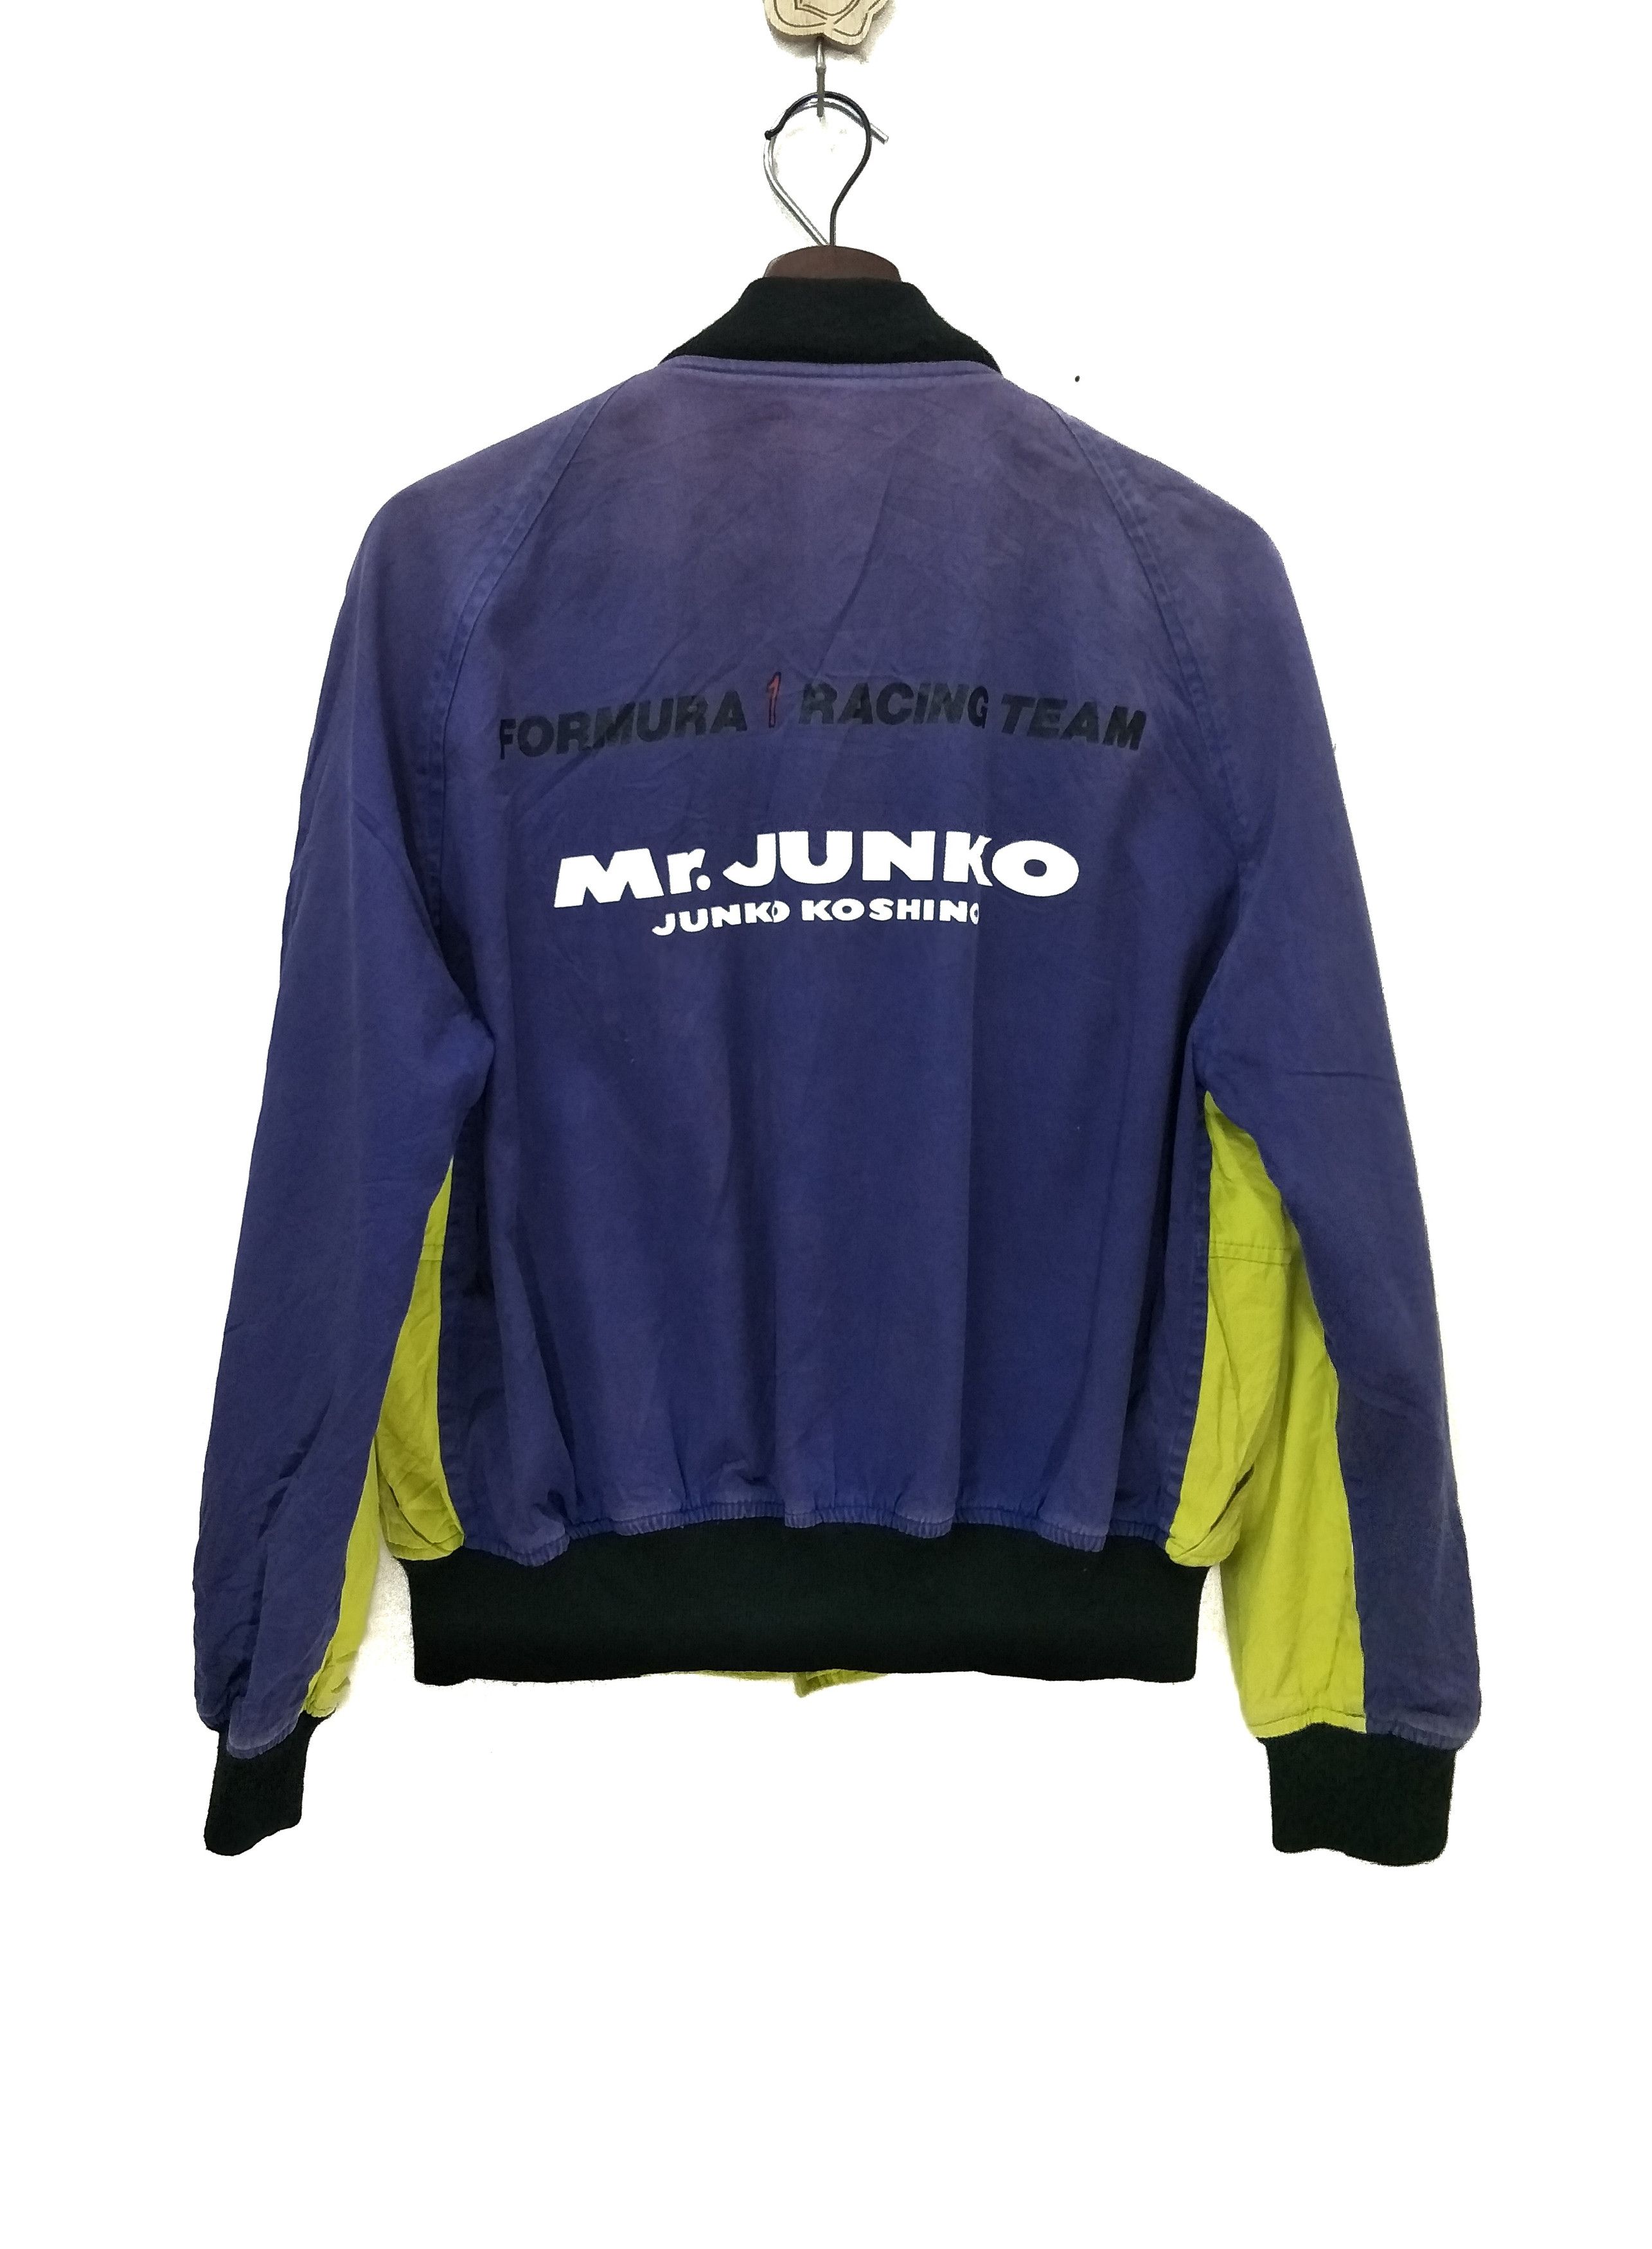 Vintage Mr Junko Junko Koshino Racing Team - 2